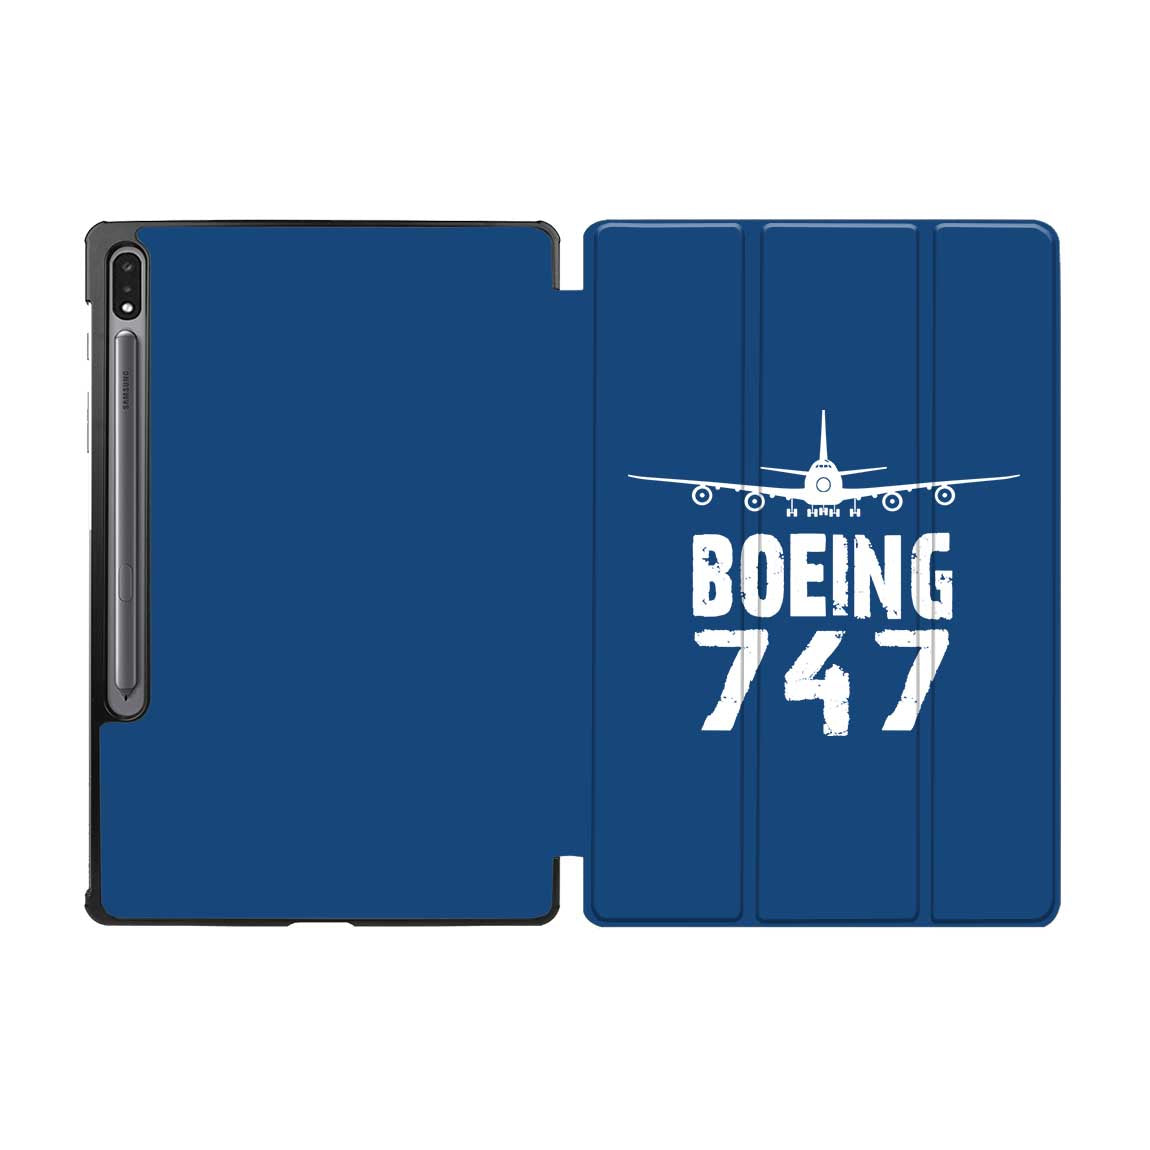 Boeing 747 & Plane Designed Samsung Tablet Cases